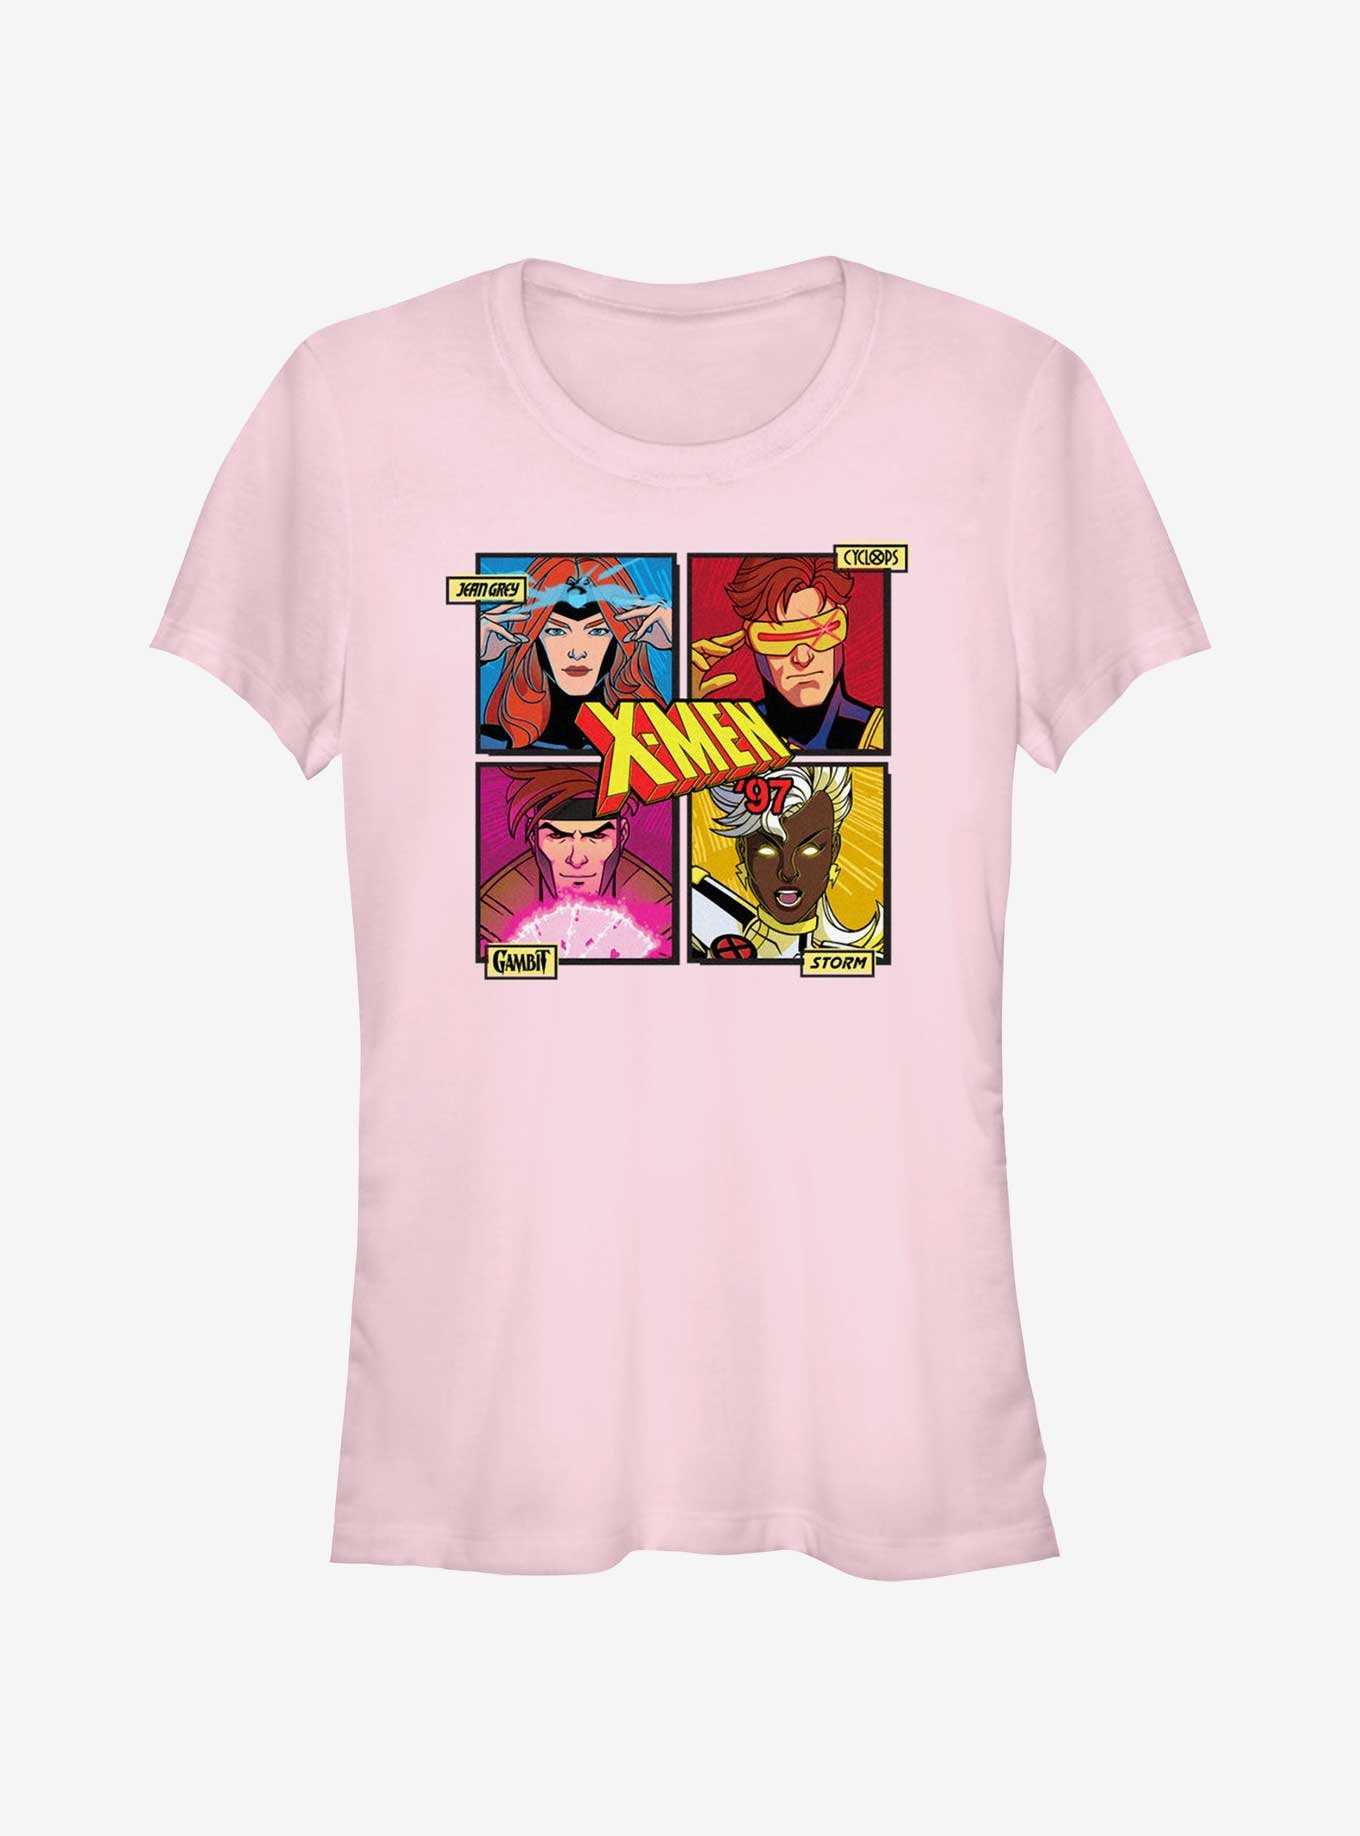 Marvel X-Men '97 Jean Cyclops Cambit Storm Girls T-Shirt, , hi-res